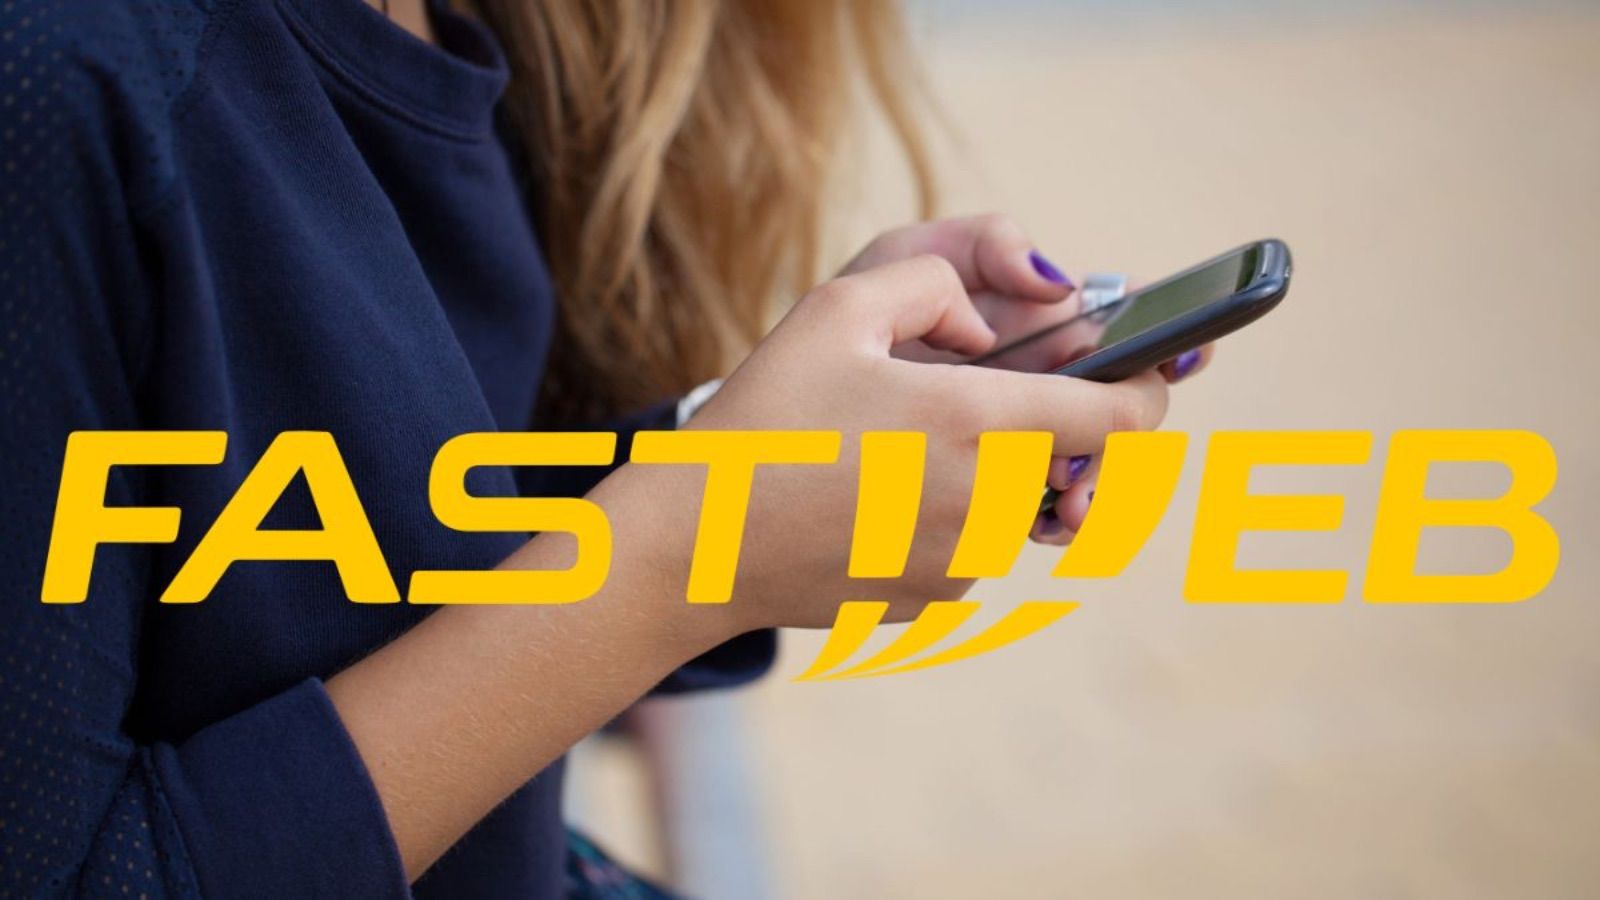 Fastweb costa 8 euro al mese, ci sono 200GB e un servizio GRATIS